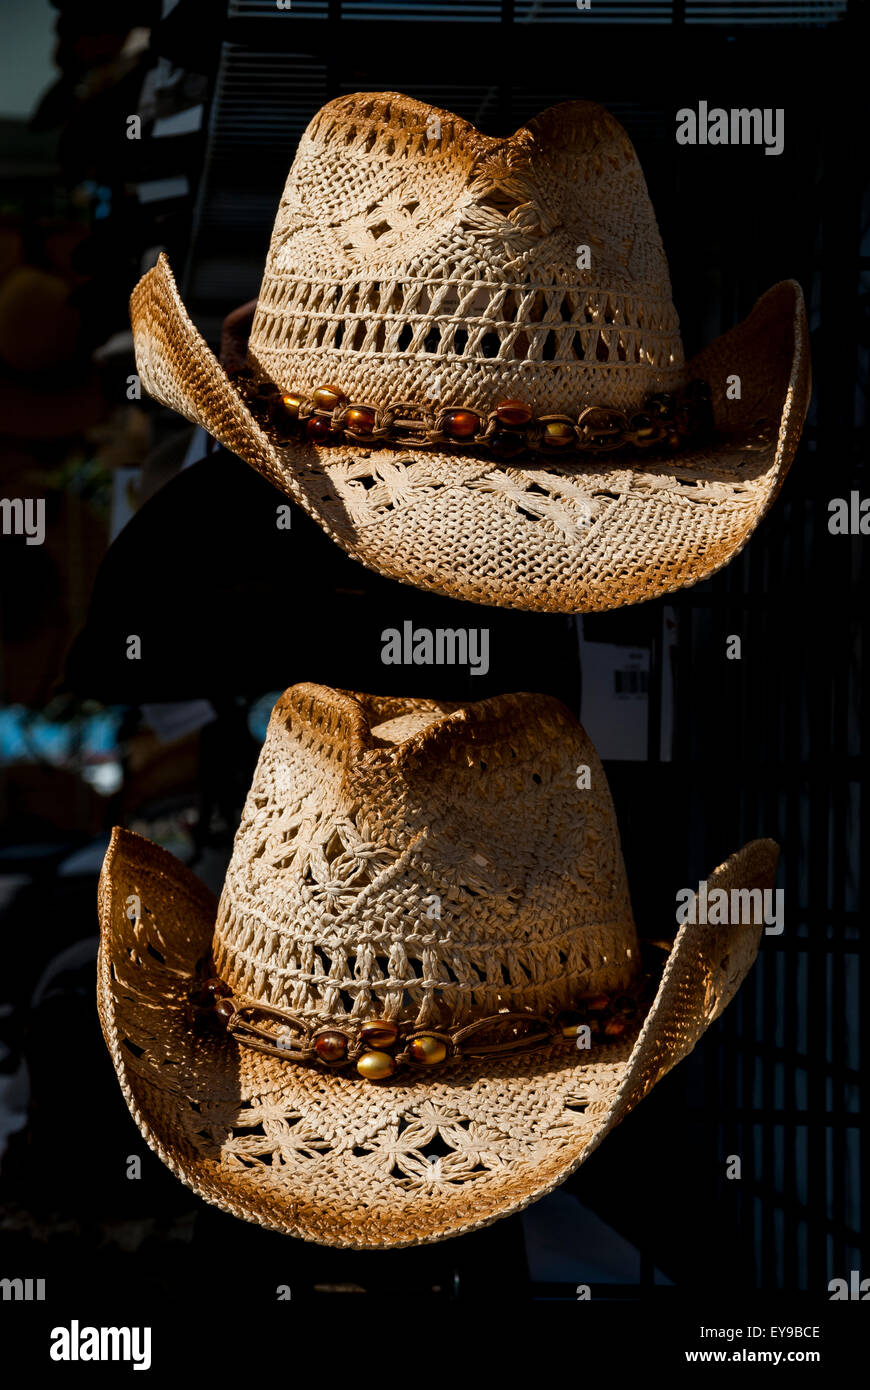 Sombrero de vaquero de paja para niños pequeños, sombrero de paja de verano  para playa, sombrero de sol vaquera occidental para niños